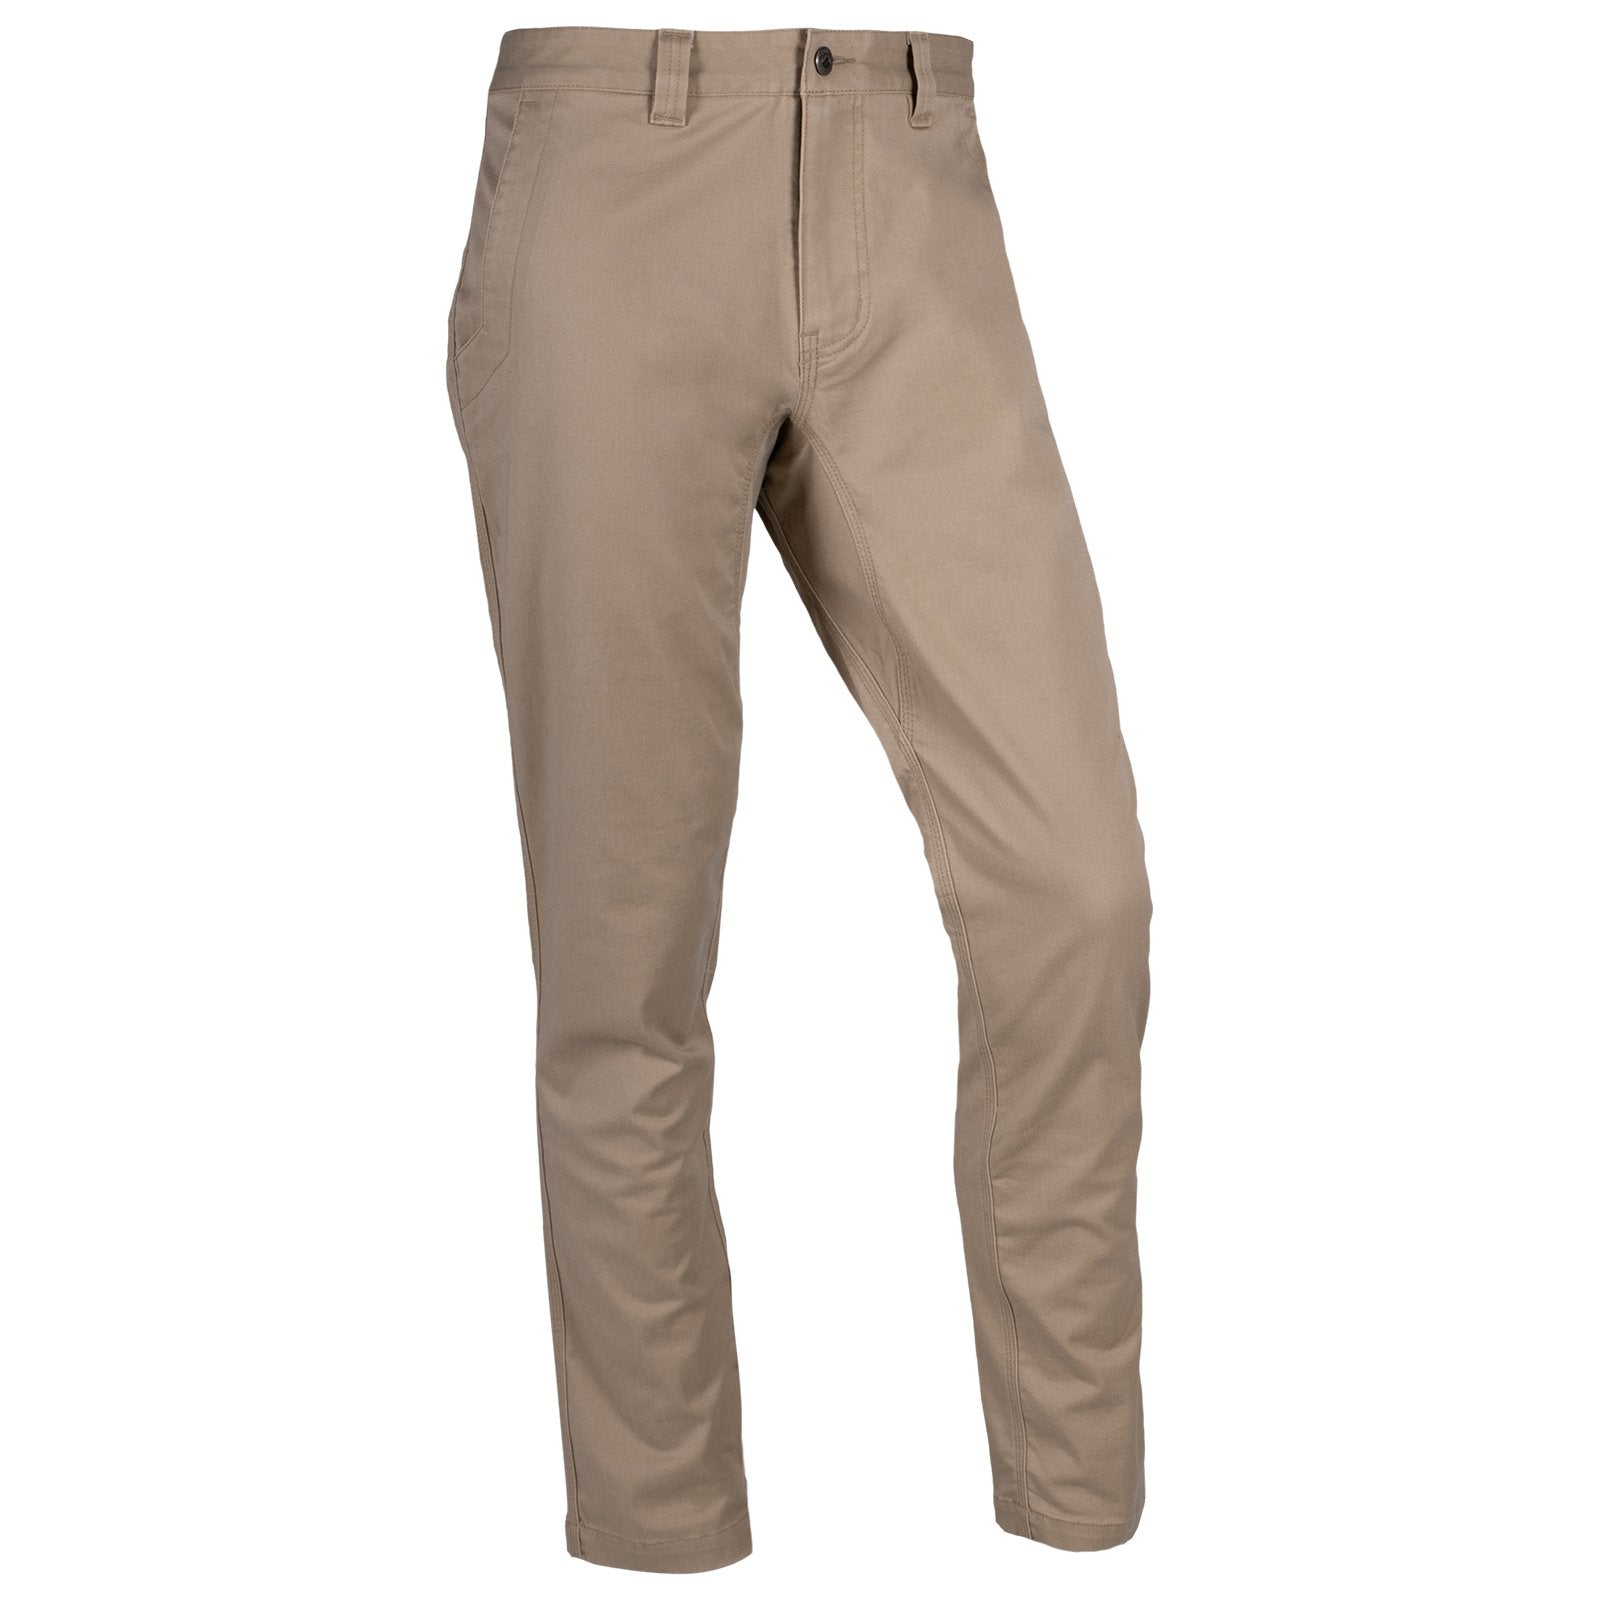 Men's Classic Pants [CO002-CLASSICS-KHAKI] - FlynnO'Hara Uniforms